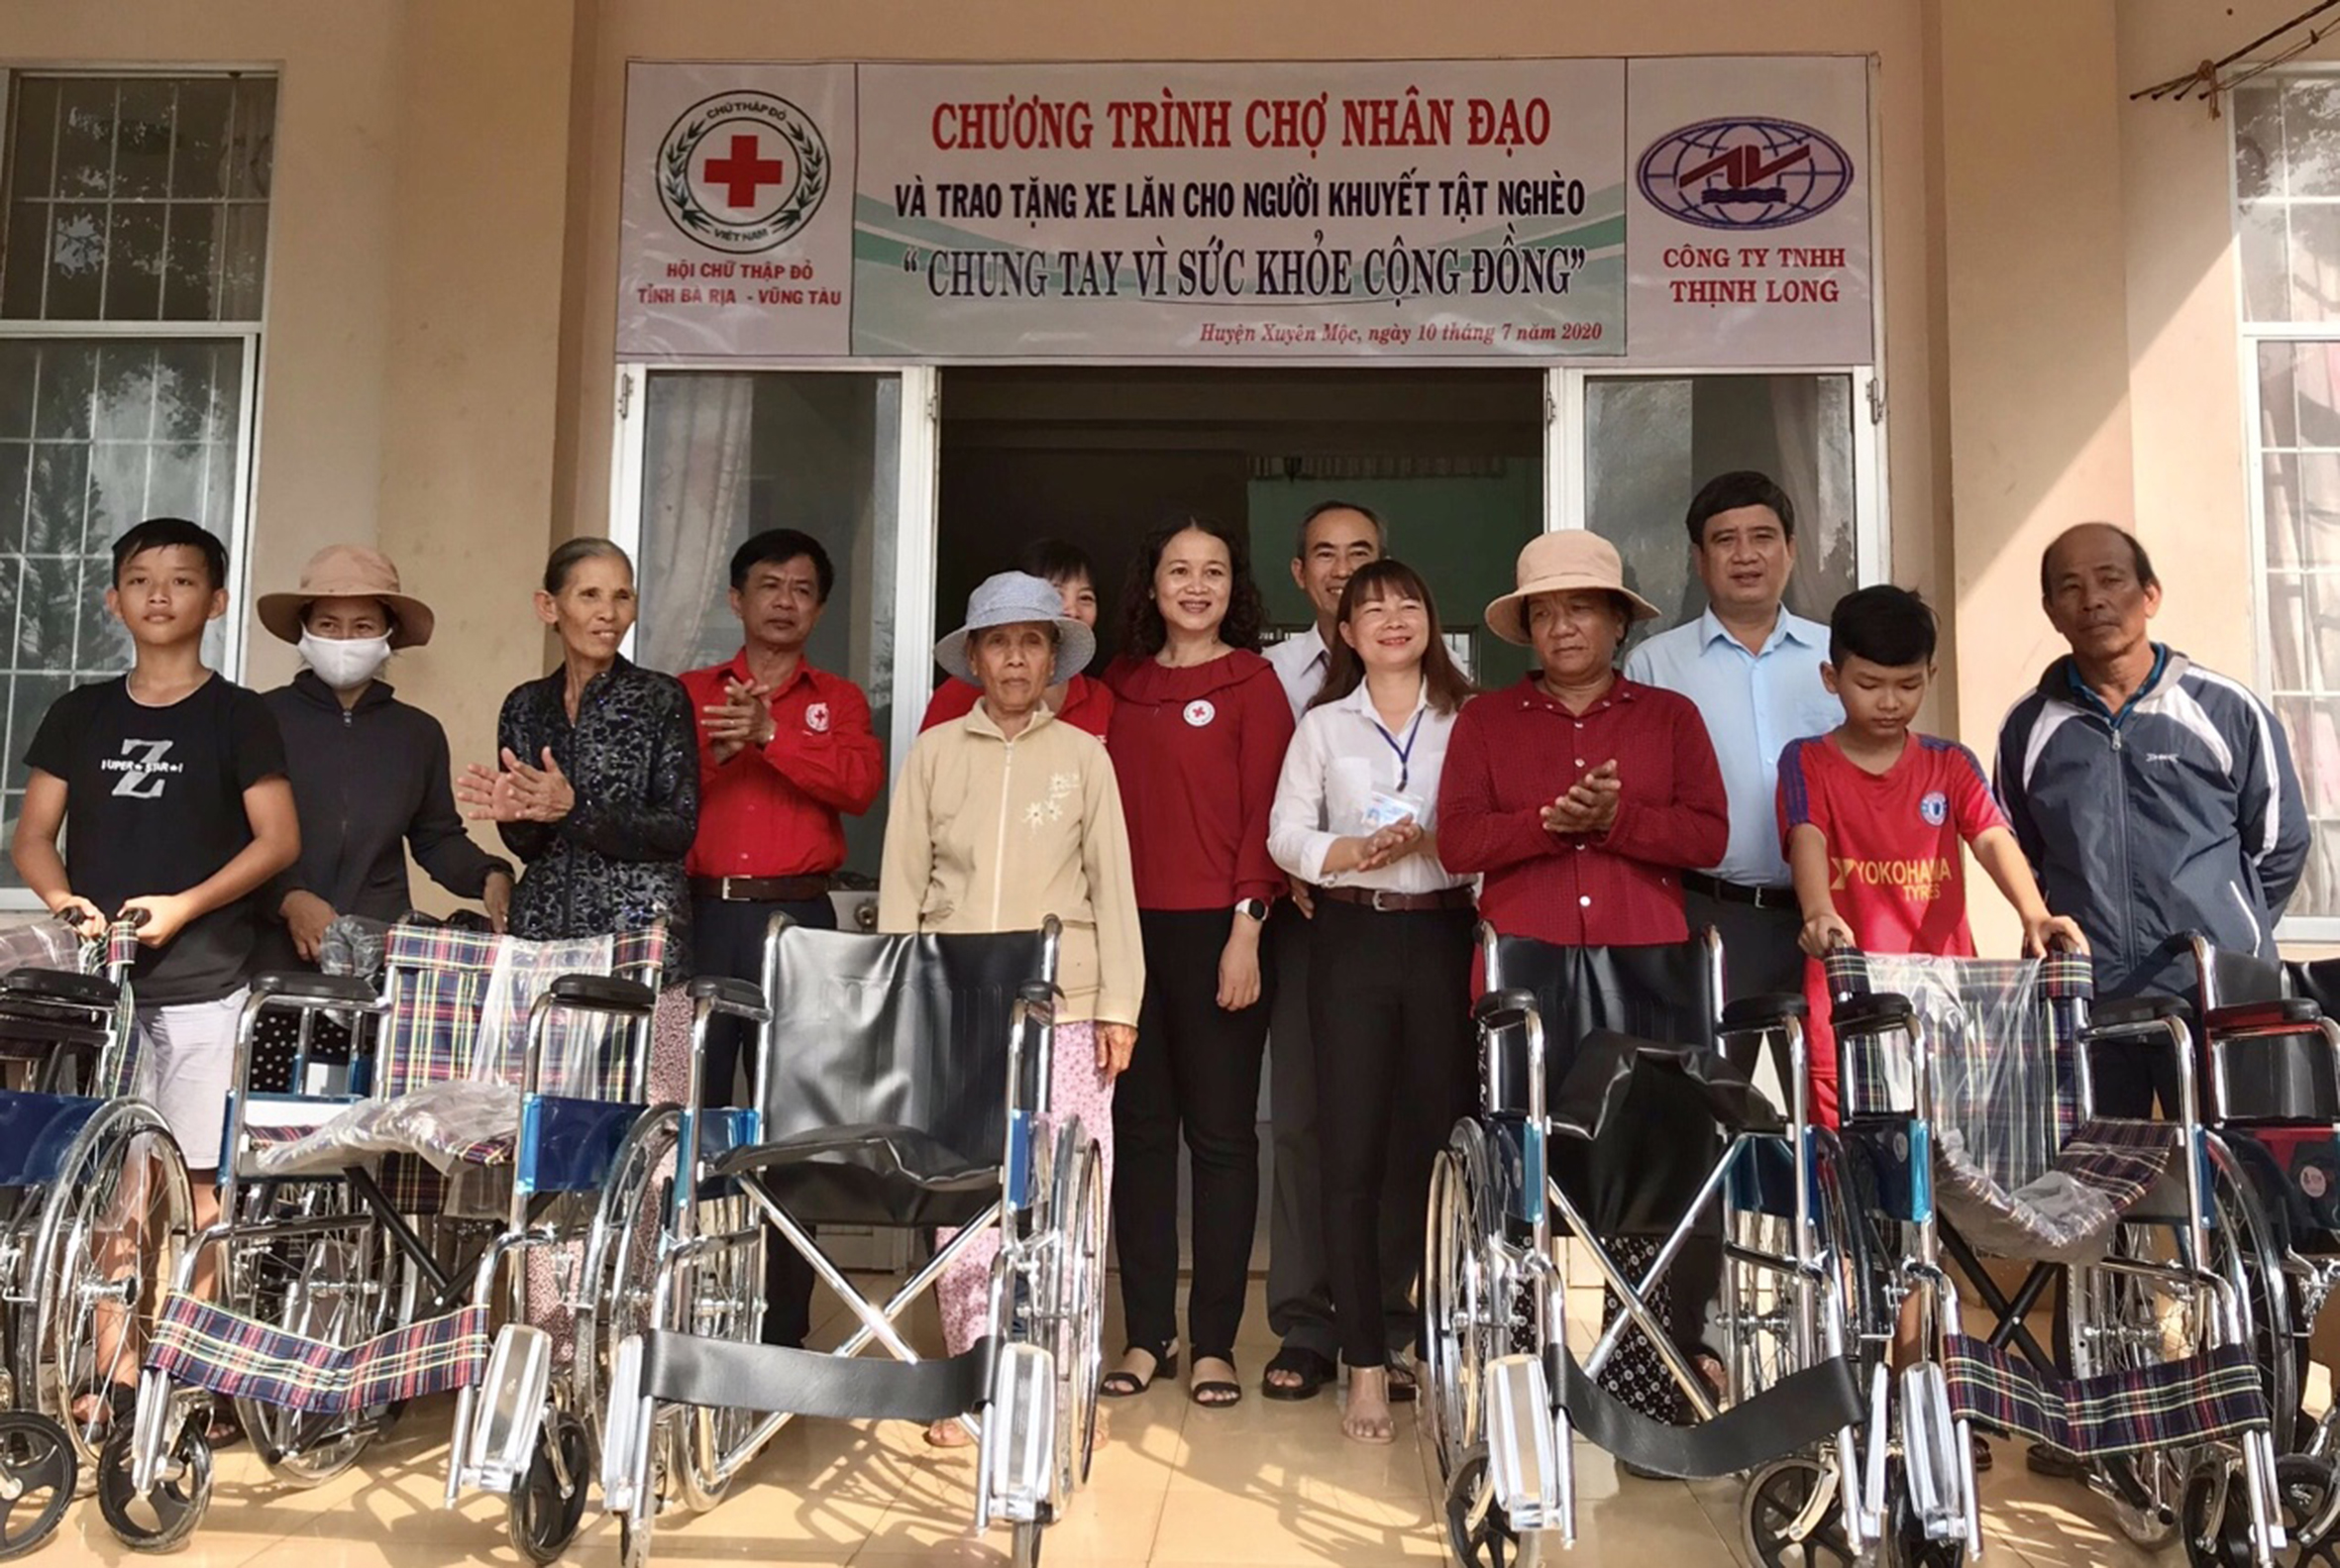 Lãnh đạo Hội CTĐ tỉnh, Công ty TNHH Thịnh Long, Hội CTĐ huyện Xuyên Mộc và UBND xã Bàu Lâm trao xe lăn cho gia đình người khuyết tật.